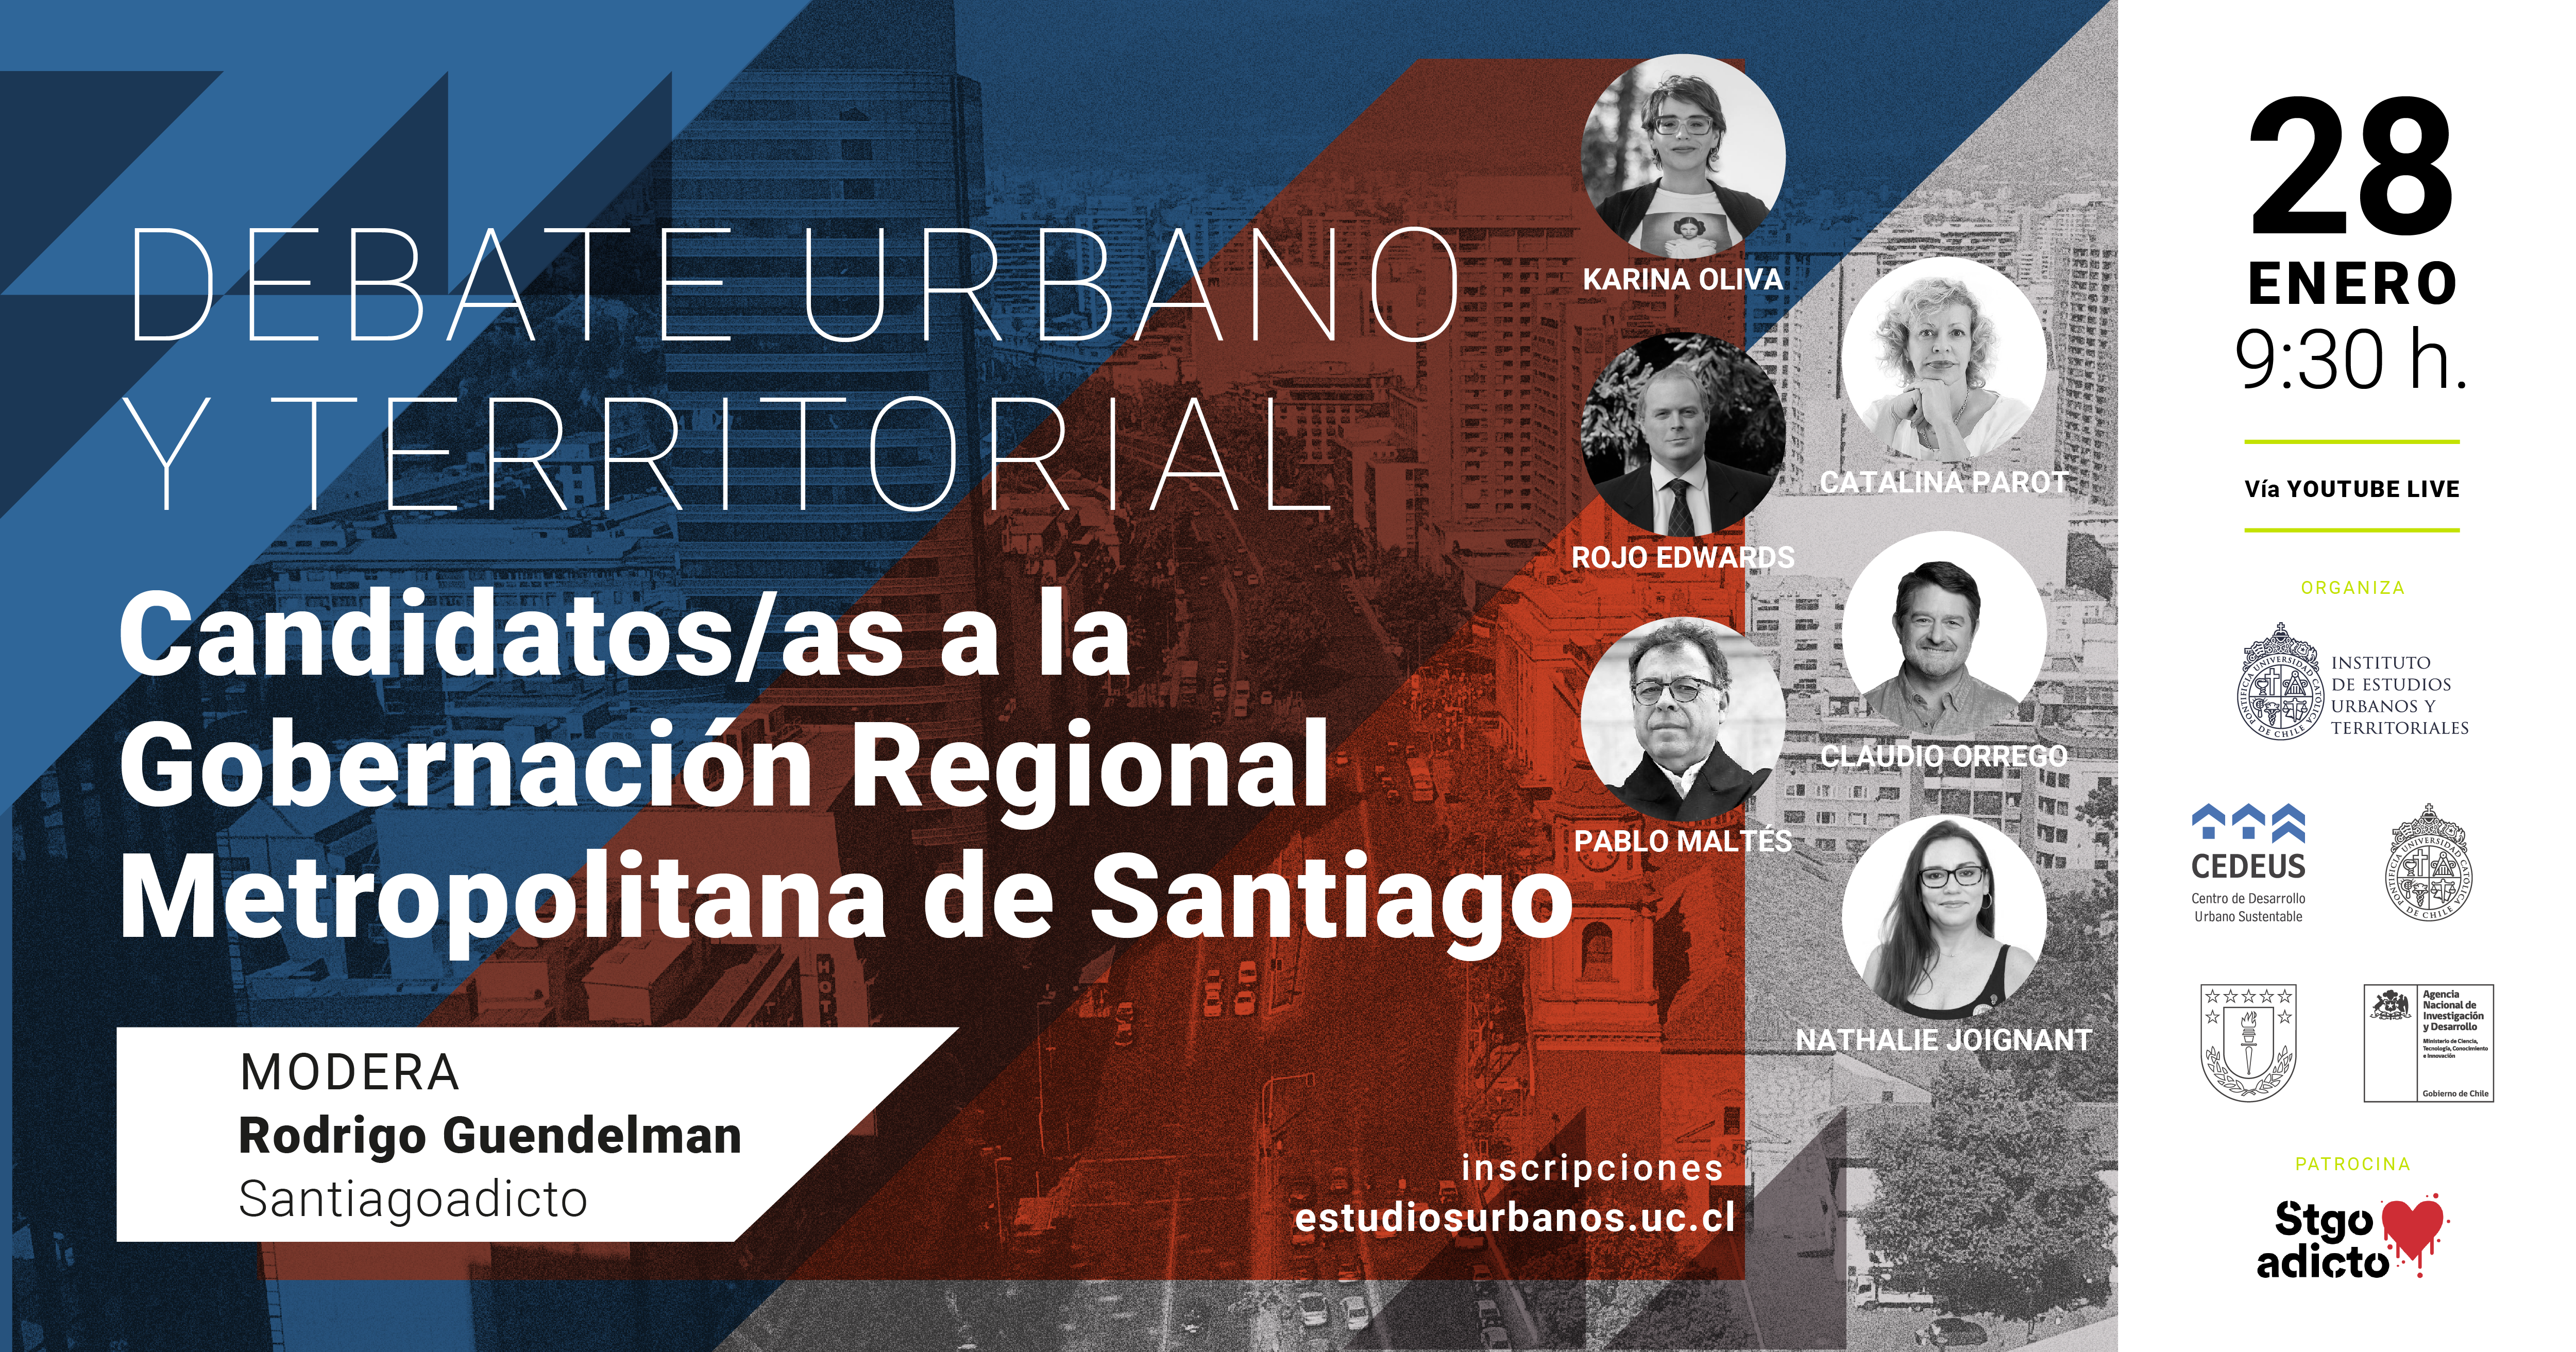 DEBATE URBANO TERRITORIAL | Candidatos/as a la gobernación regional metropolitana de Santiago